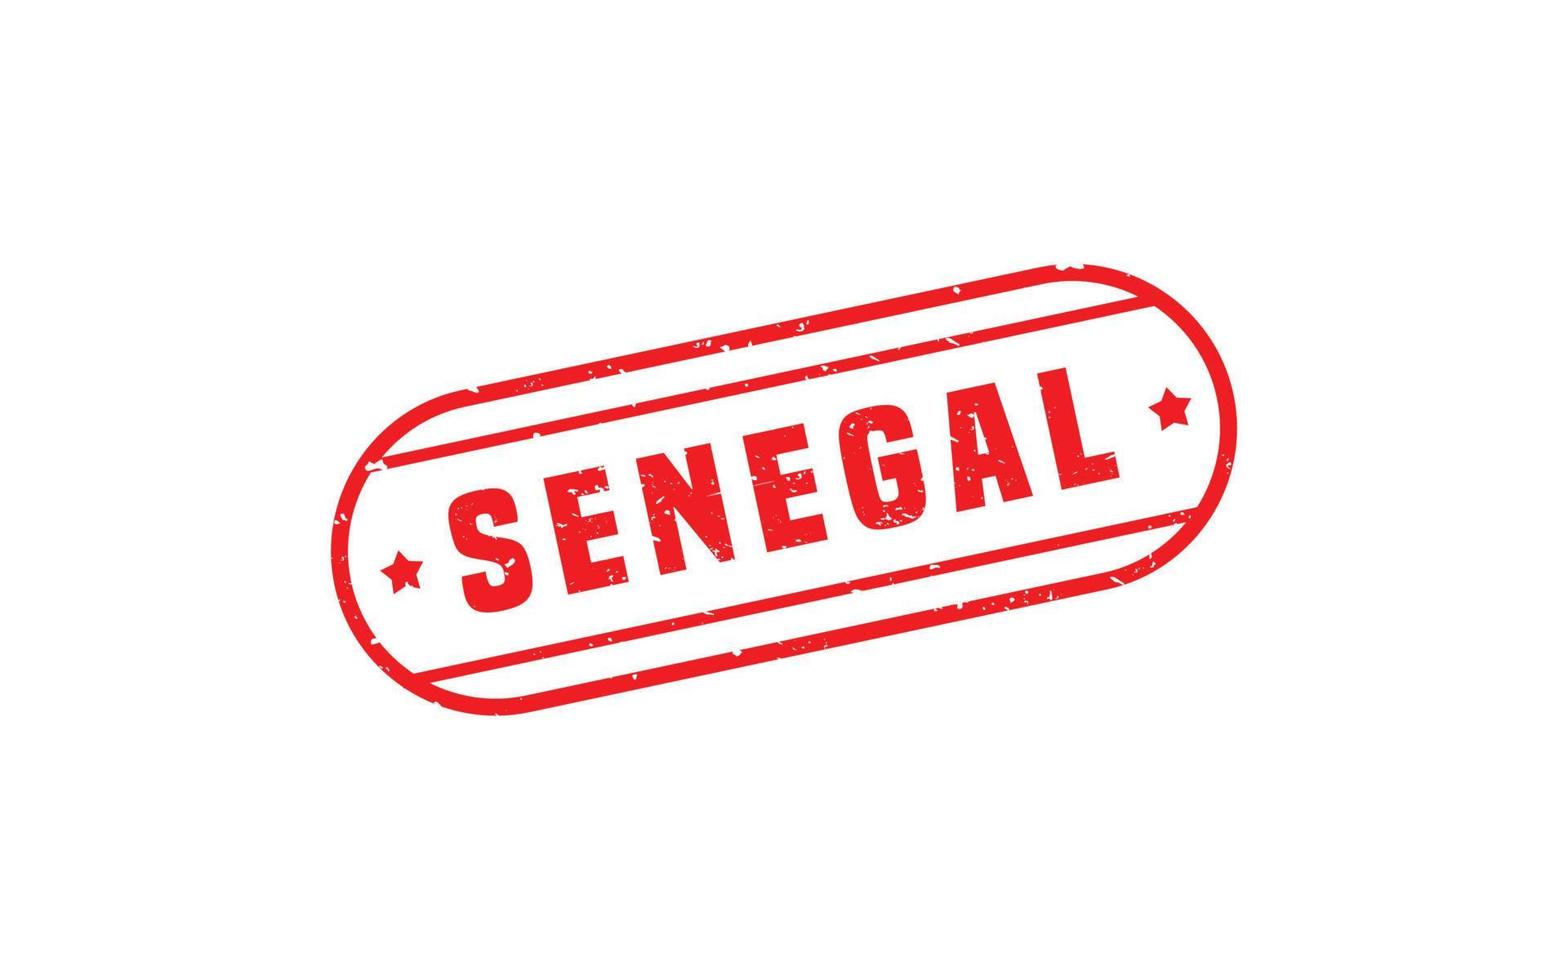 Senegal francobollo gomma da cancellare con grunge stile su bianca sfondo vettore